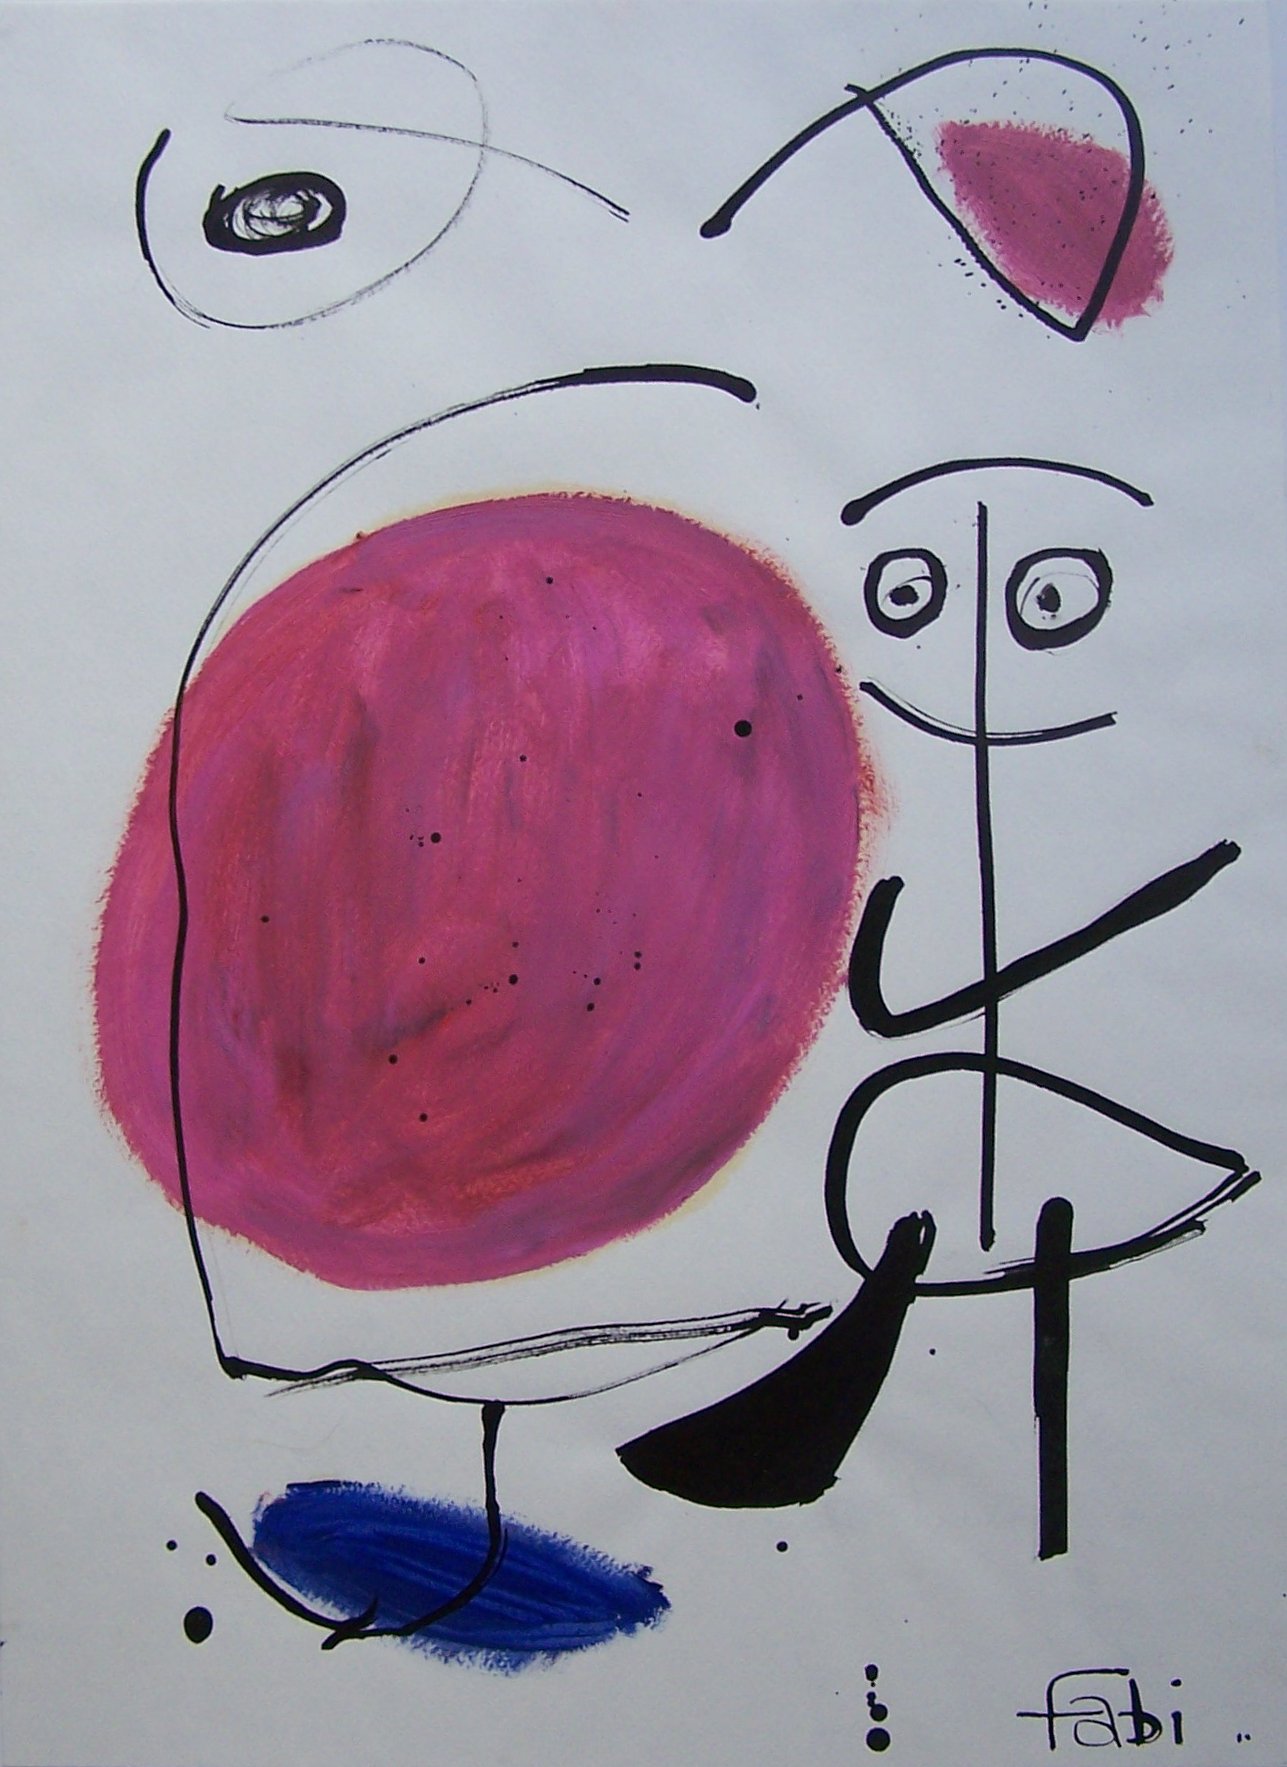 10, Mensch mit Luftballon (Problem), 48 x 35 cm, Öl-Tusche auf Papier, 1996